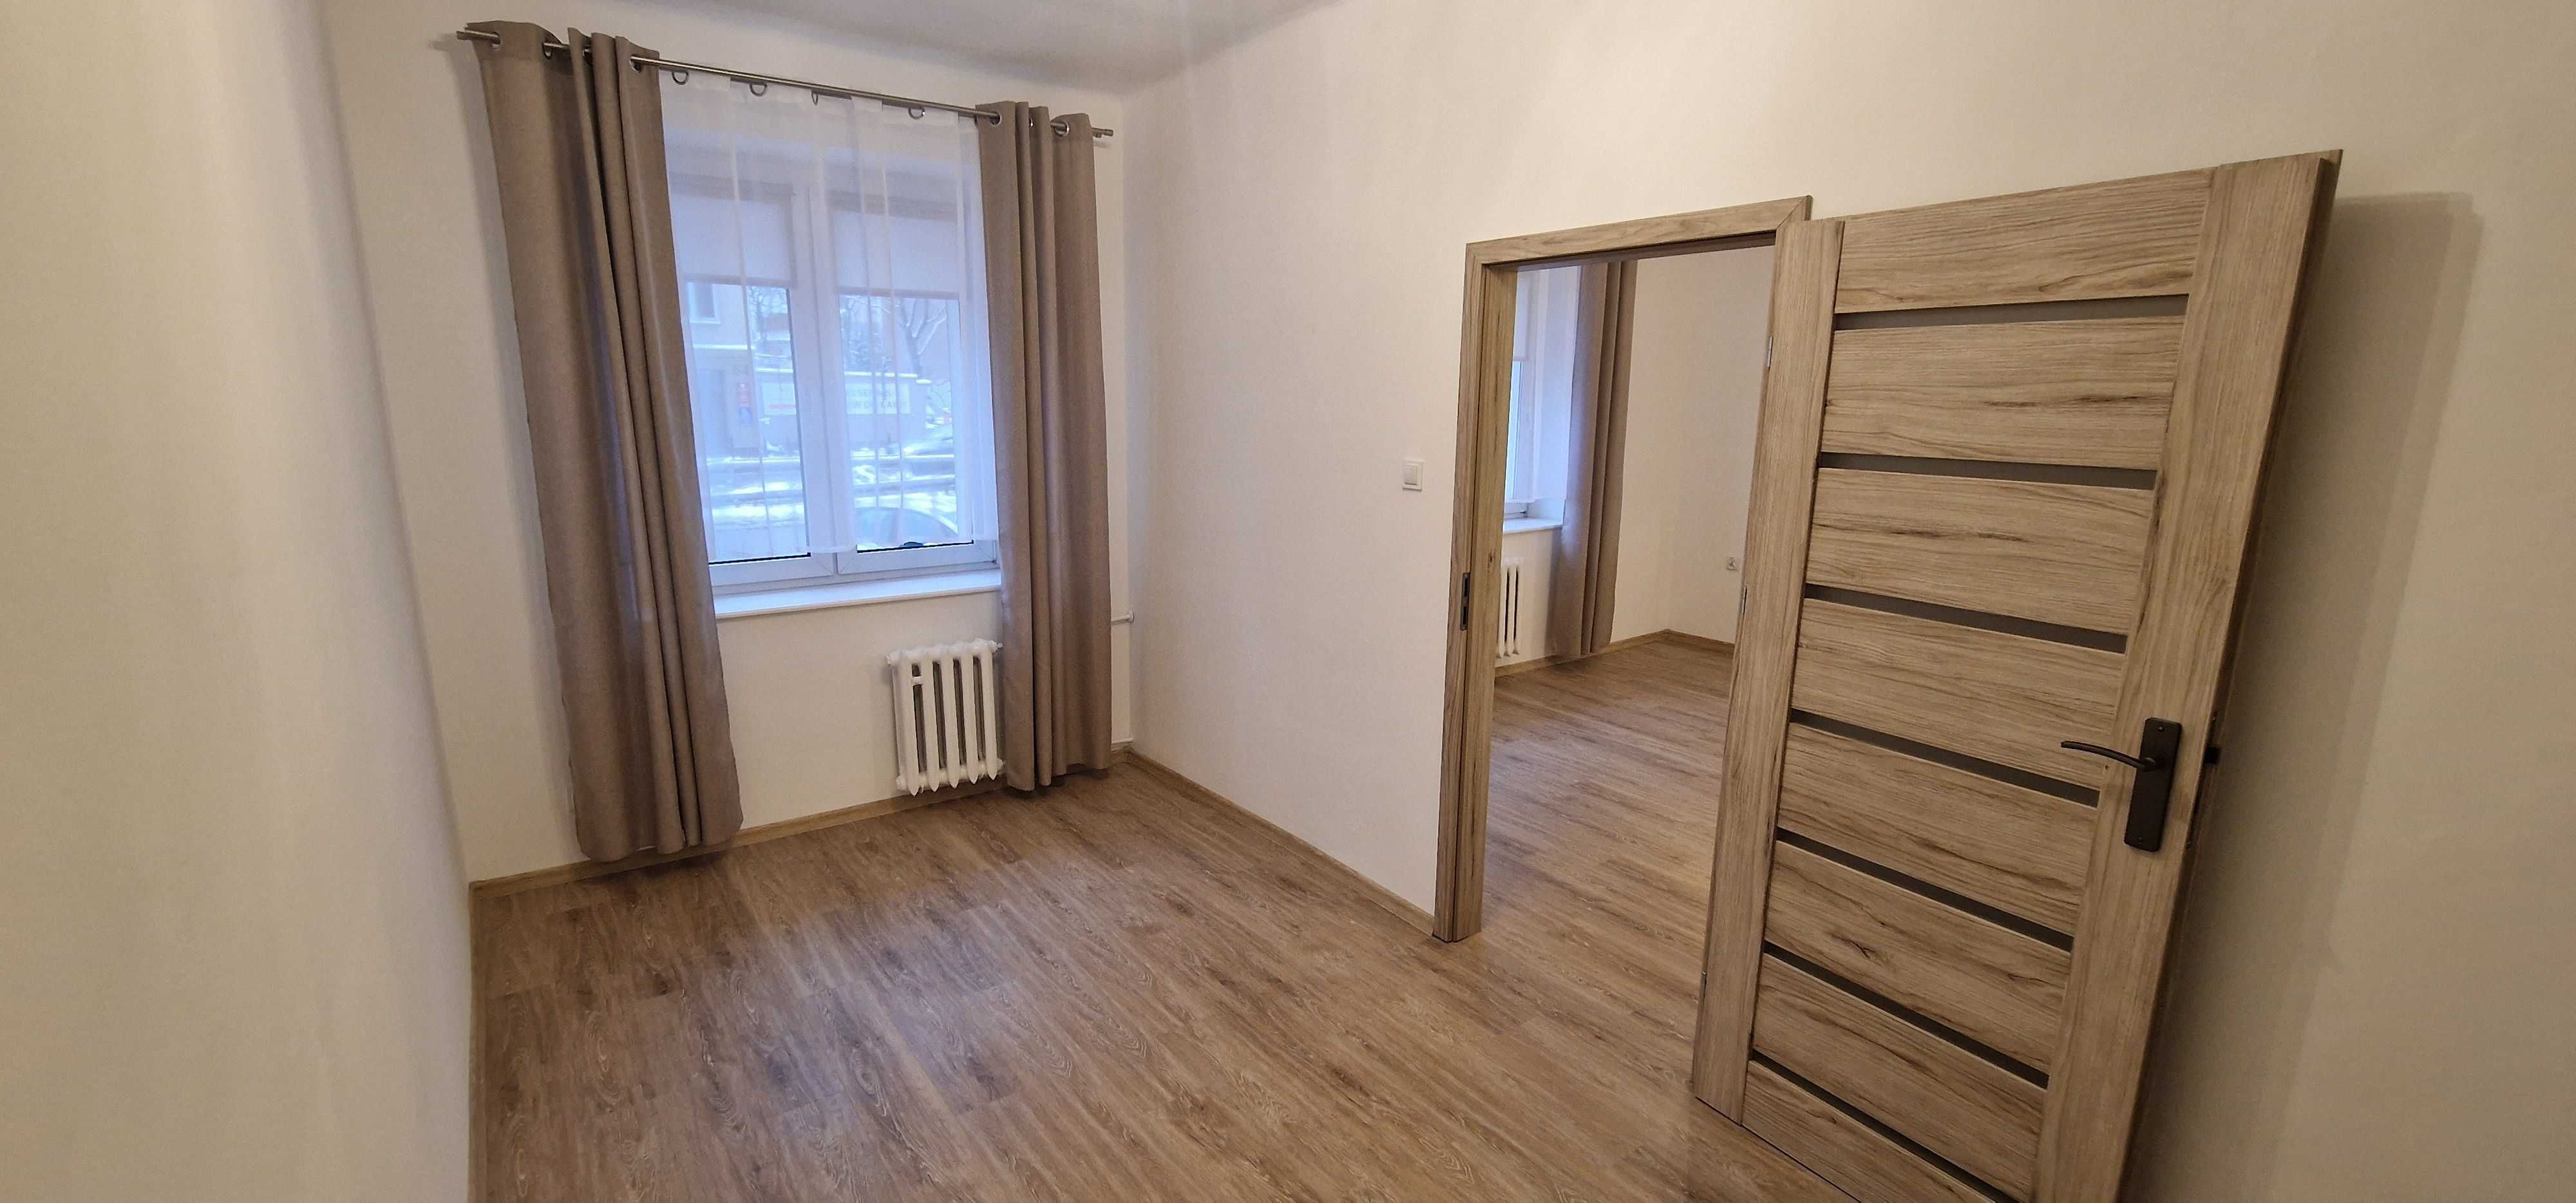 Dwupokojowe mieszkanie w centrum Gdyni